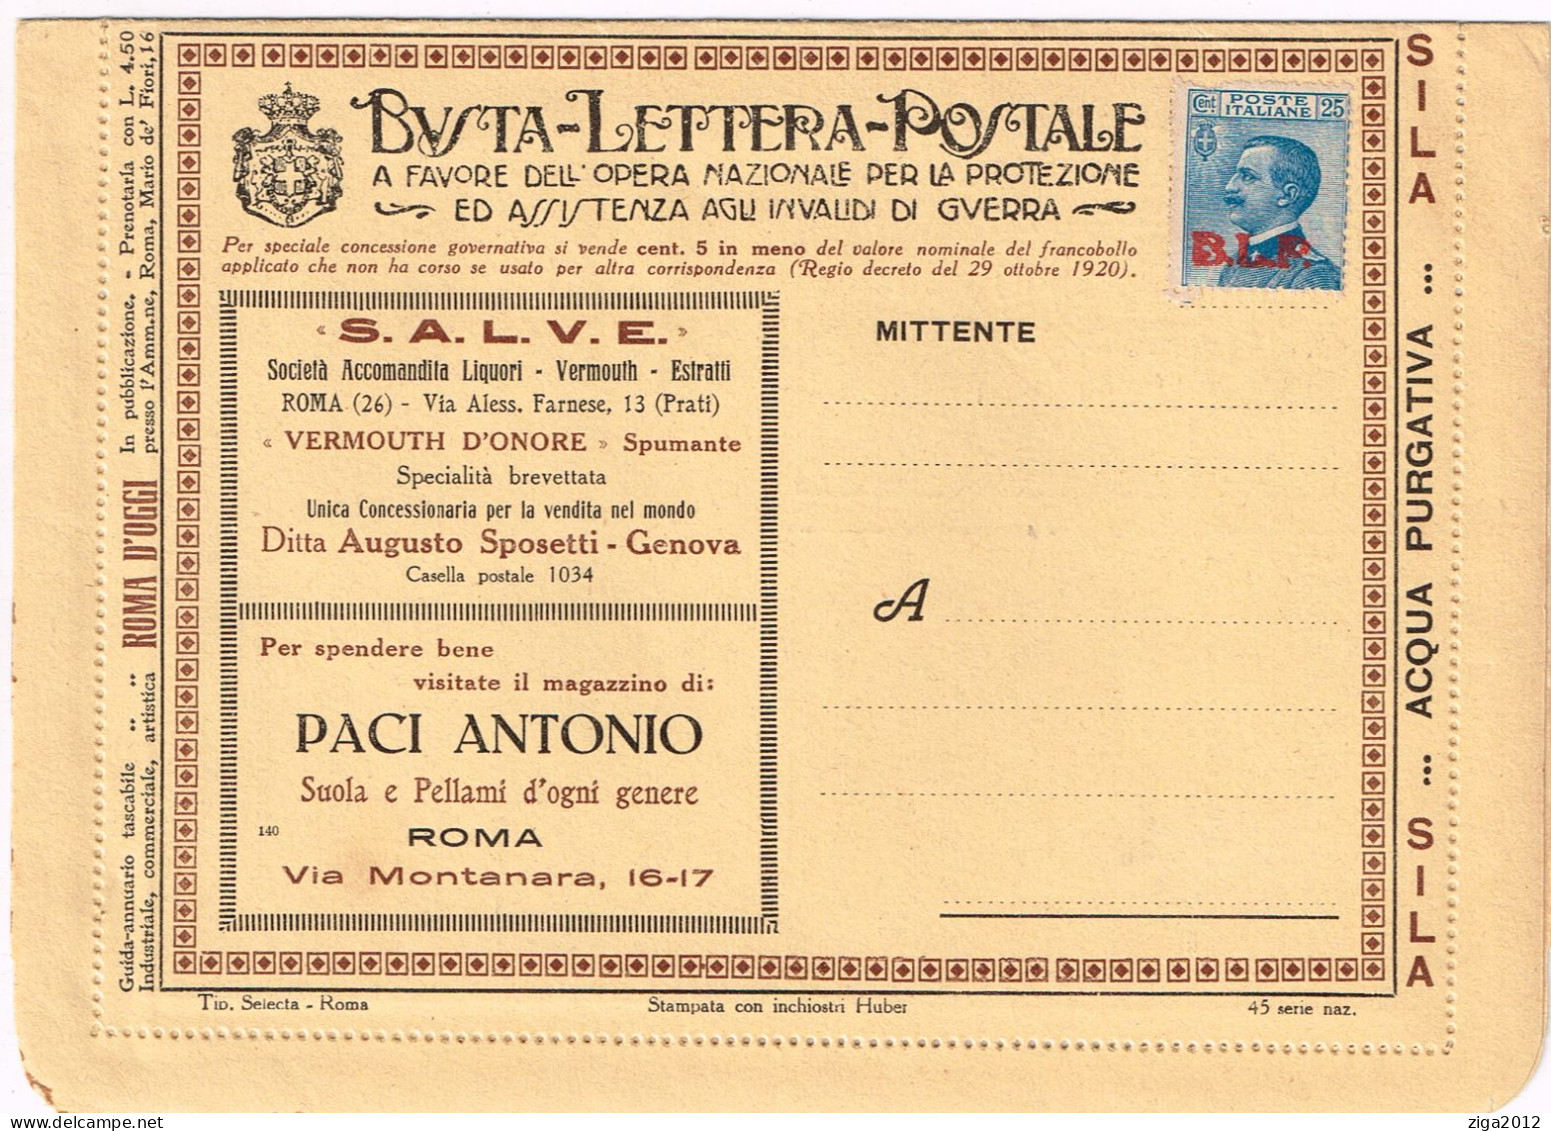 ITALY 1923 B.L.P. BUSTA LETTERA POSTALE CON C.25 III° TIPO NUOVA E COMPLETA - Reklame